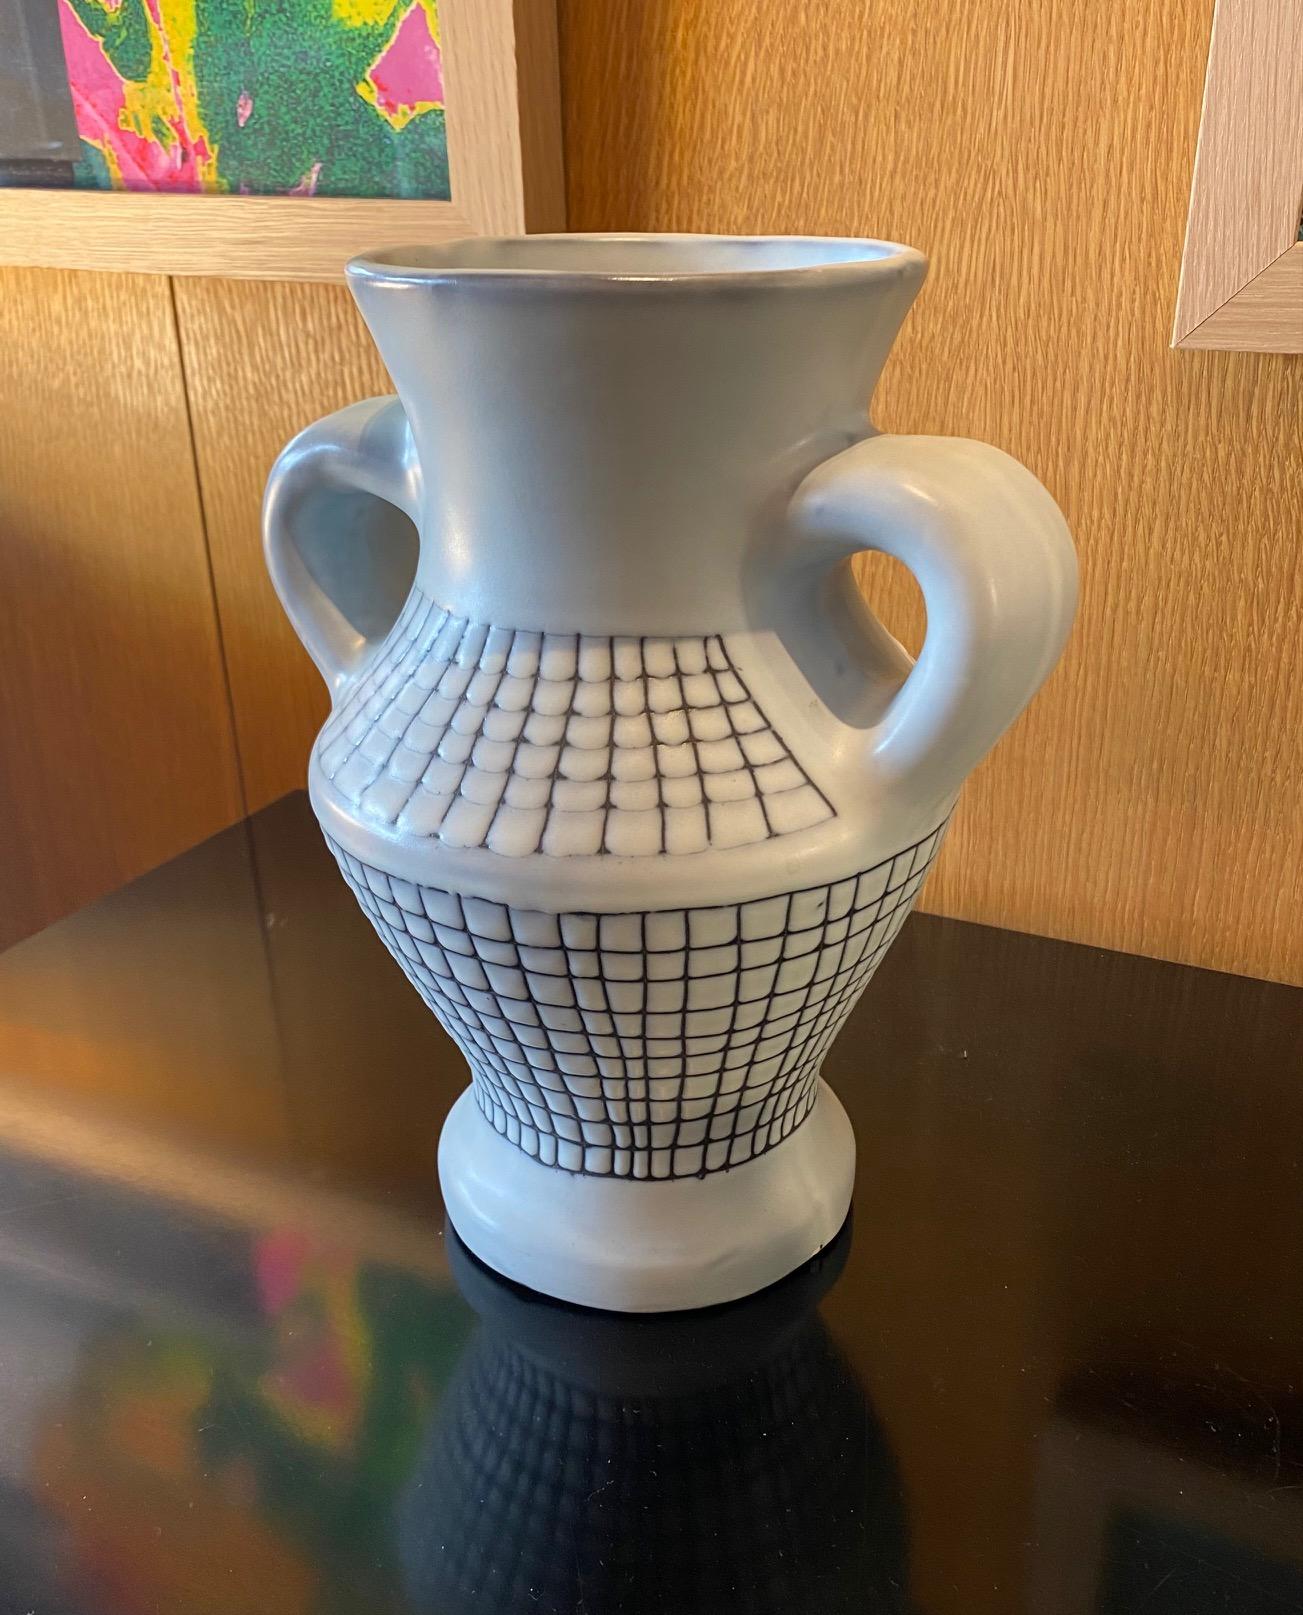 Ceramic vase by Roger Capron, France, 1960s
Signed 